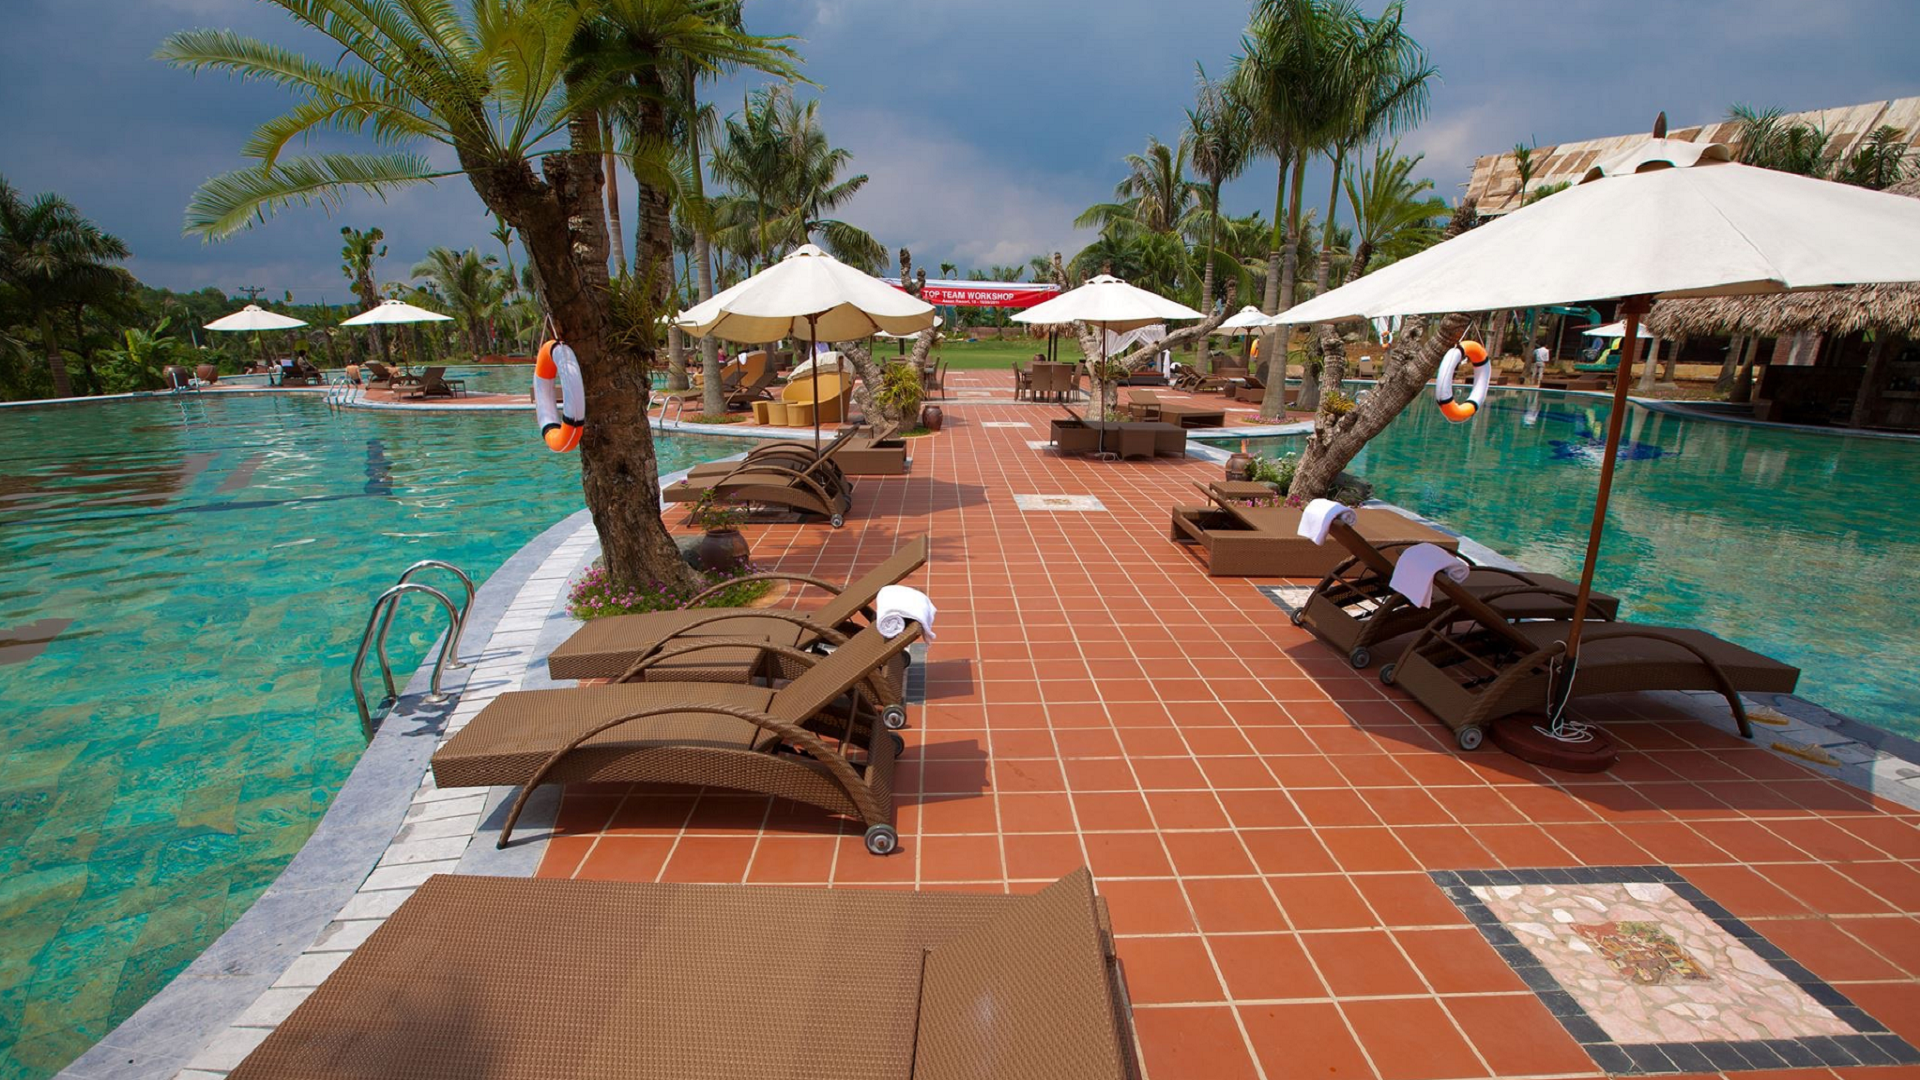 Hùng Vương Pool - Đơn vị hàng đầu trong lĩnh vực bể bơi, xông hơi